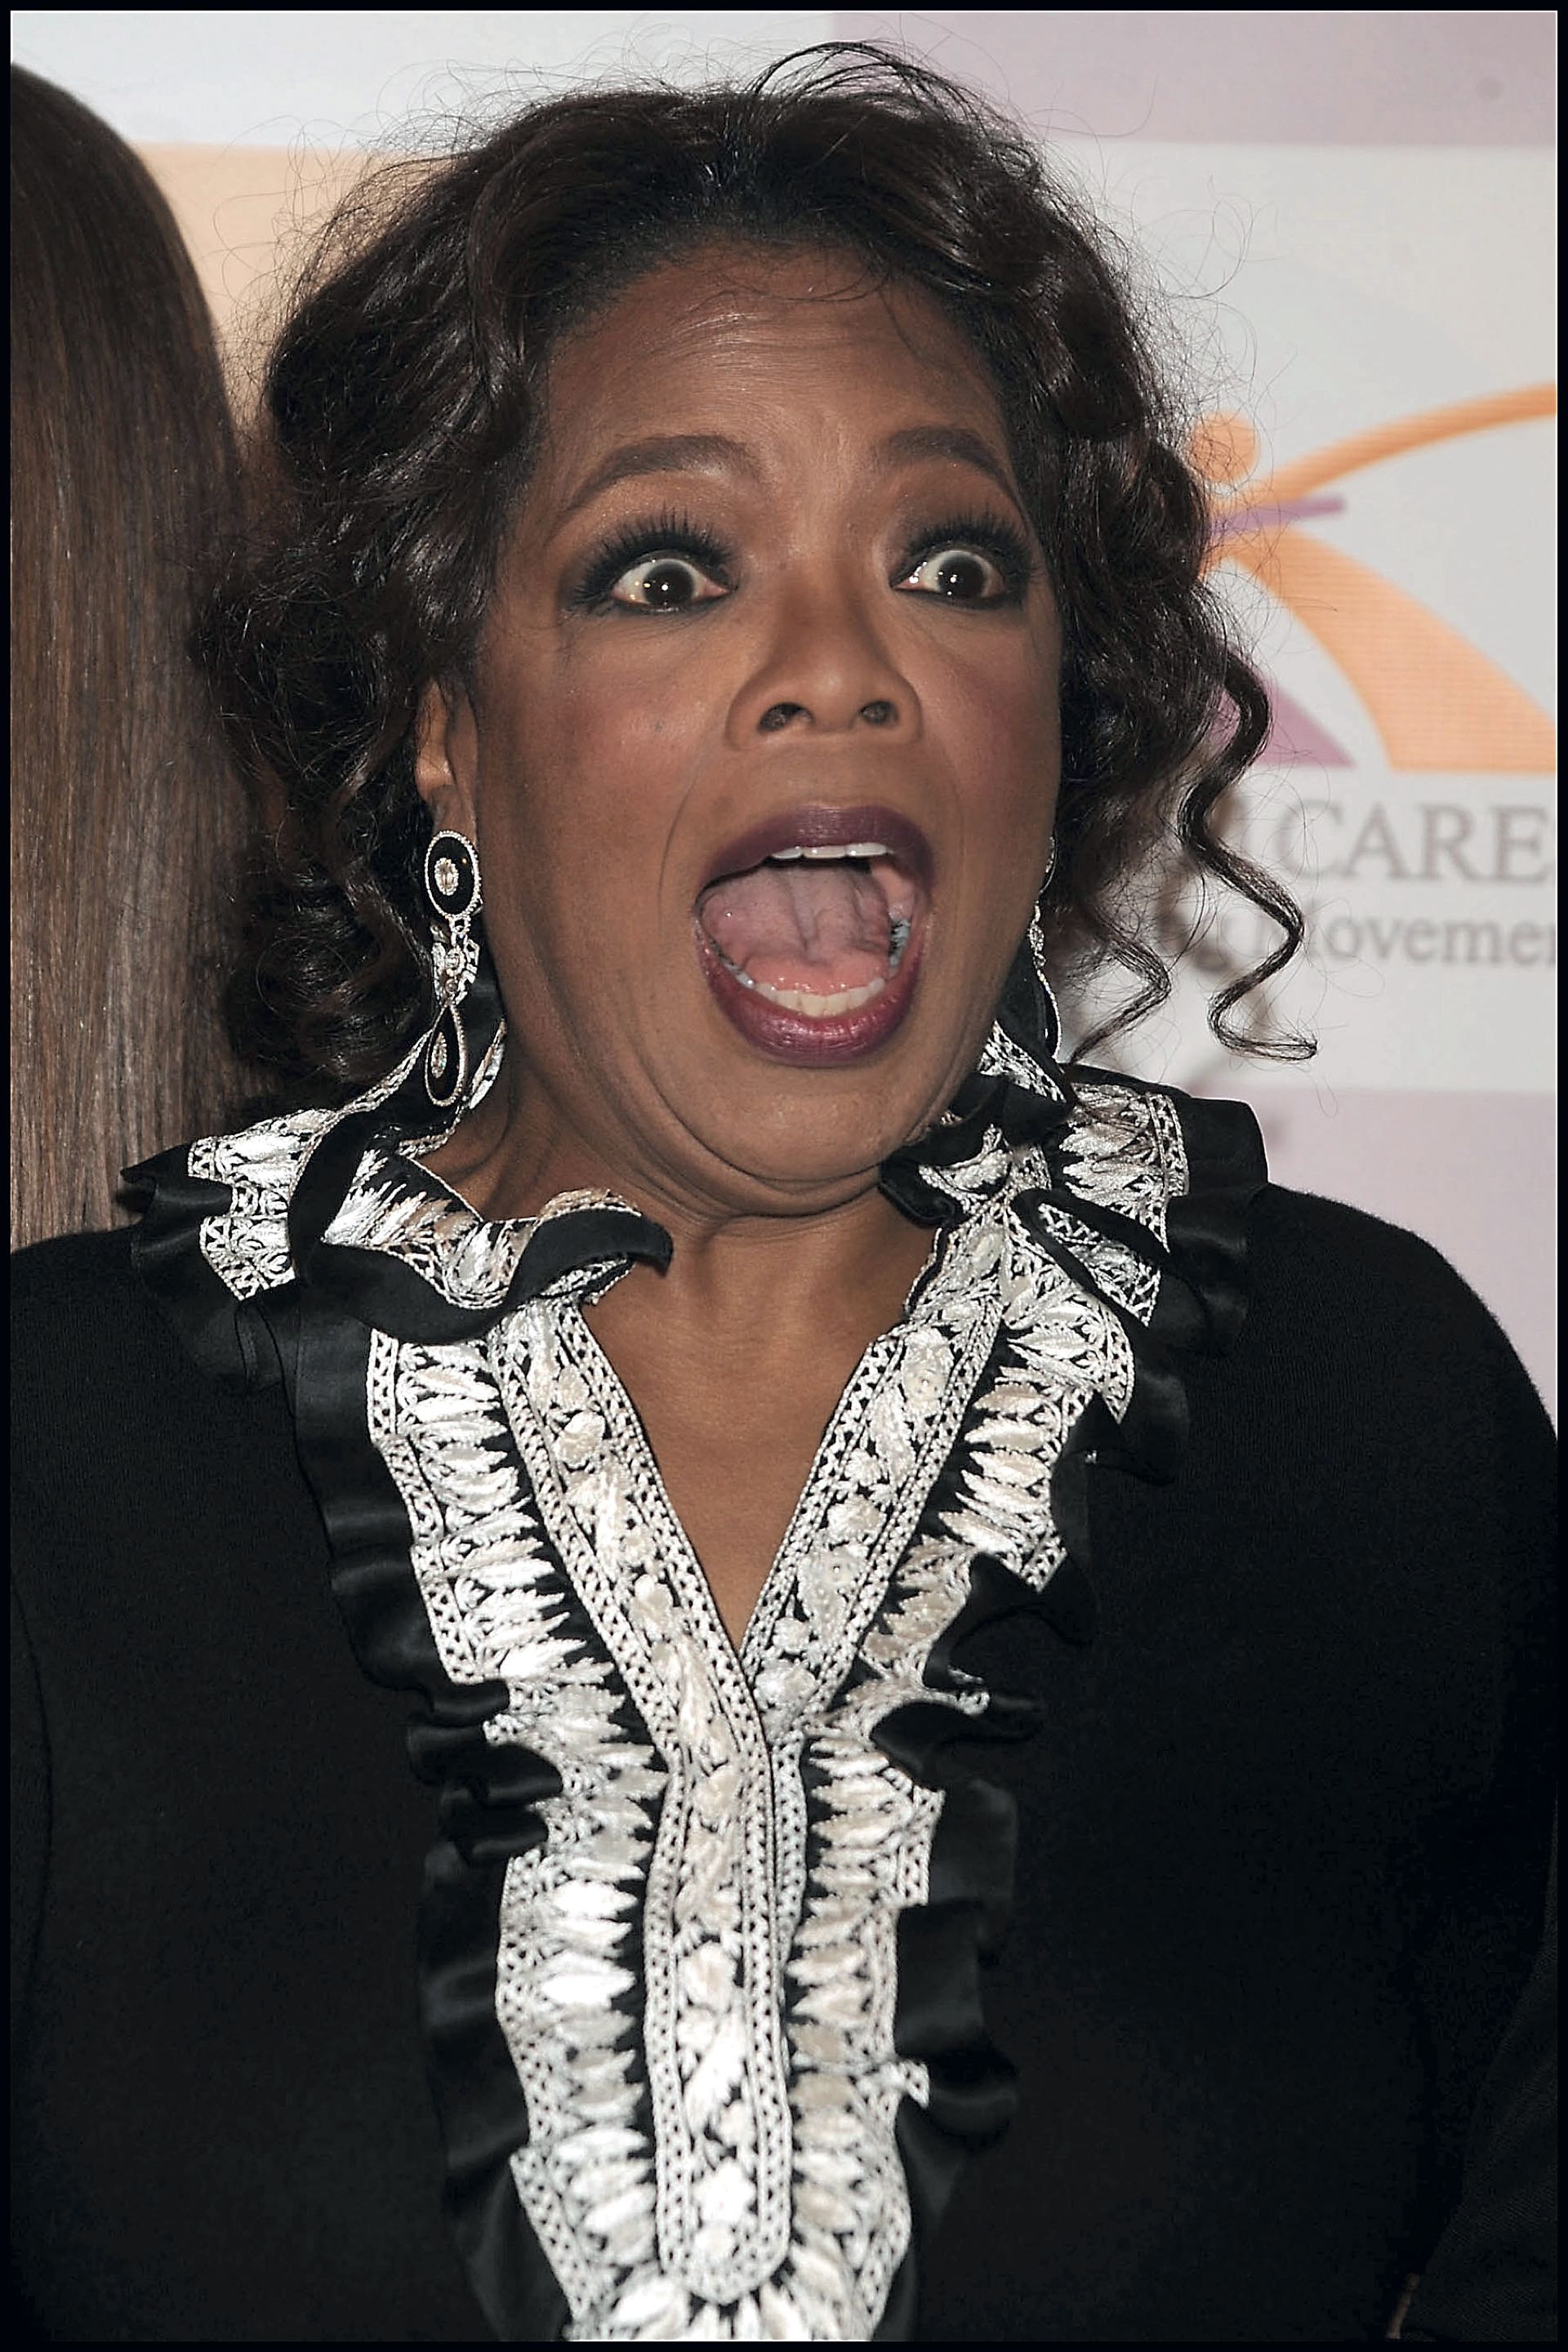 En boca de todos, Oprah Winfrey no se deja amedrentar por Donald Trump. Sabe que su candidatura a presidente sería una amenaza para quien la conoce desde la juventud e hizo carrera en los medios a la par. Hoy, empresarios multimillonarios ambos.